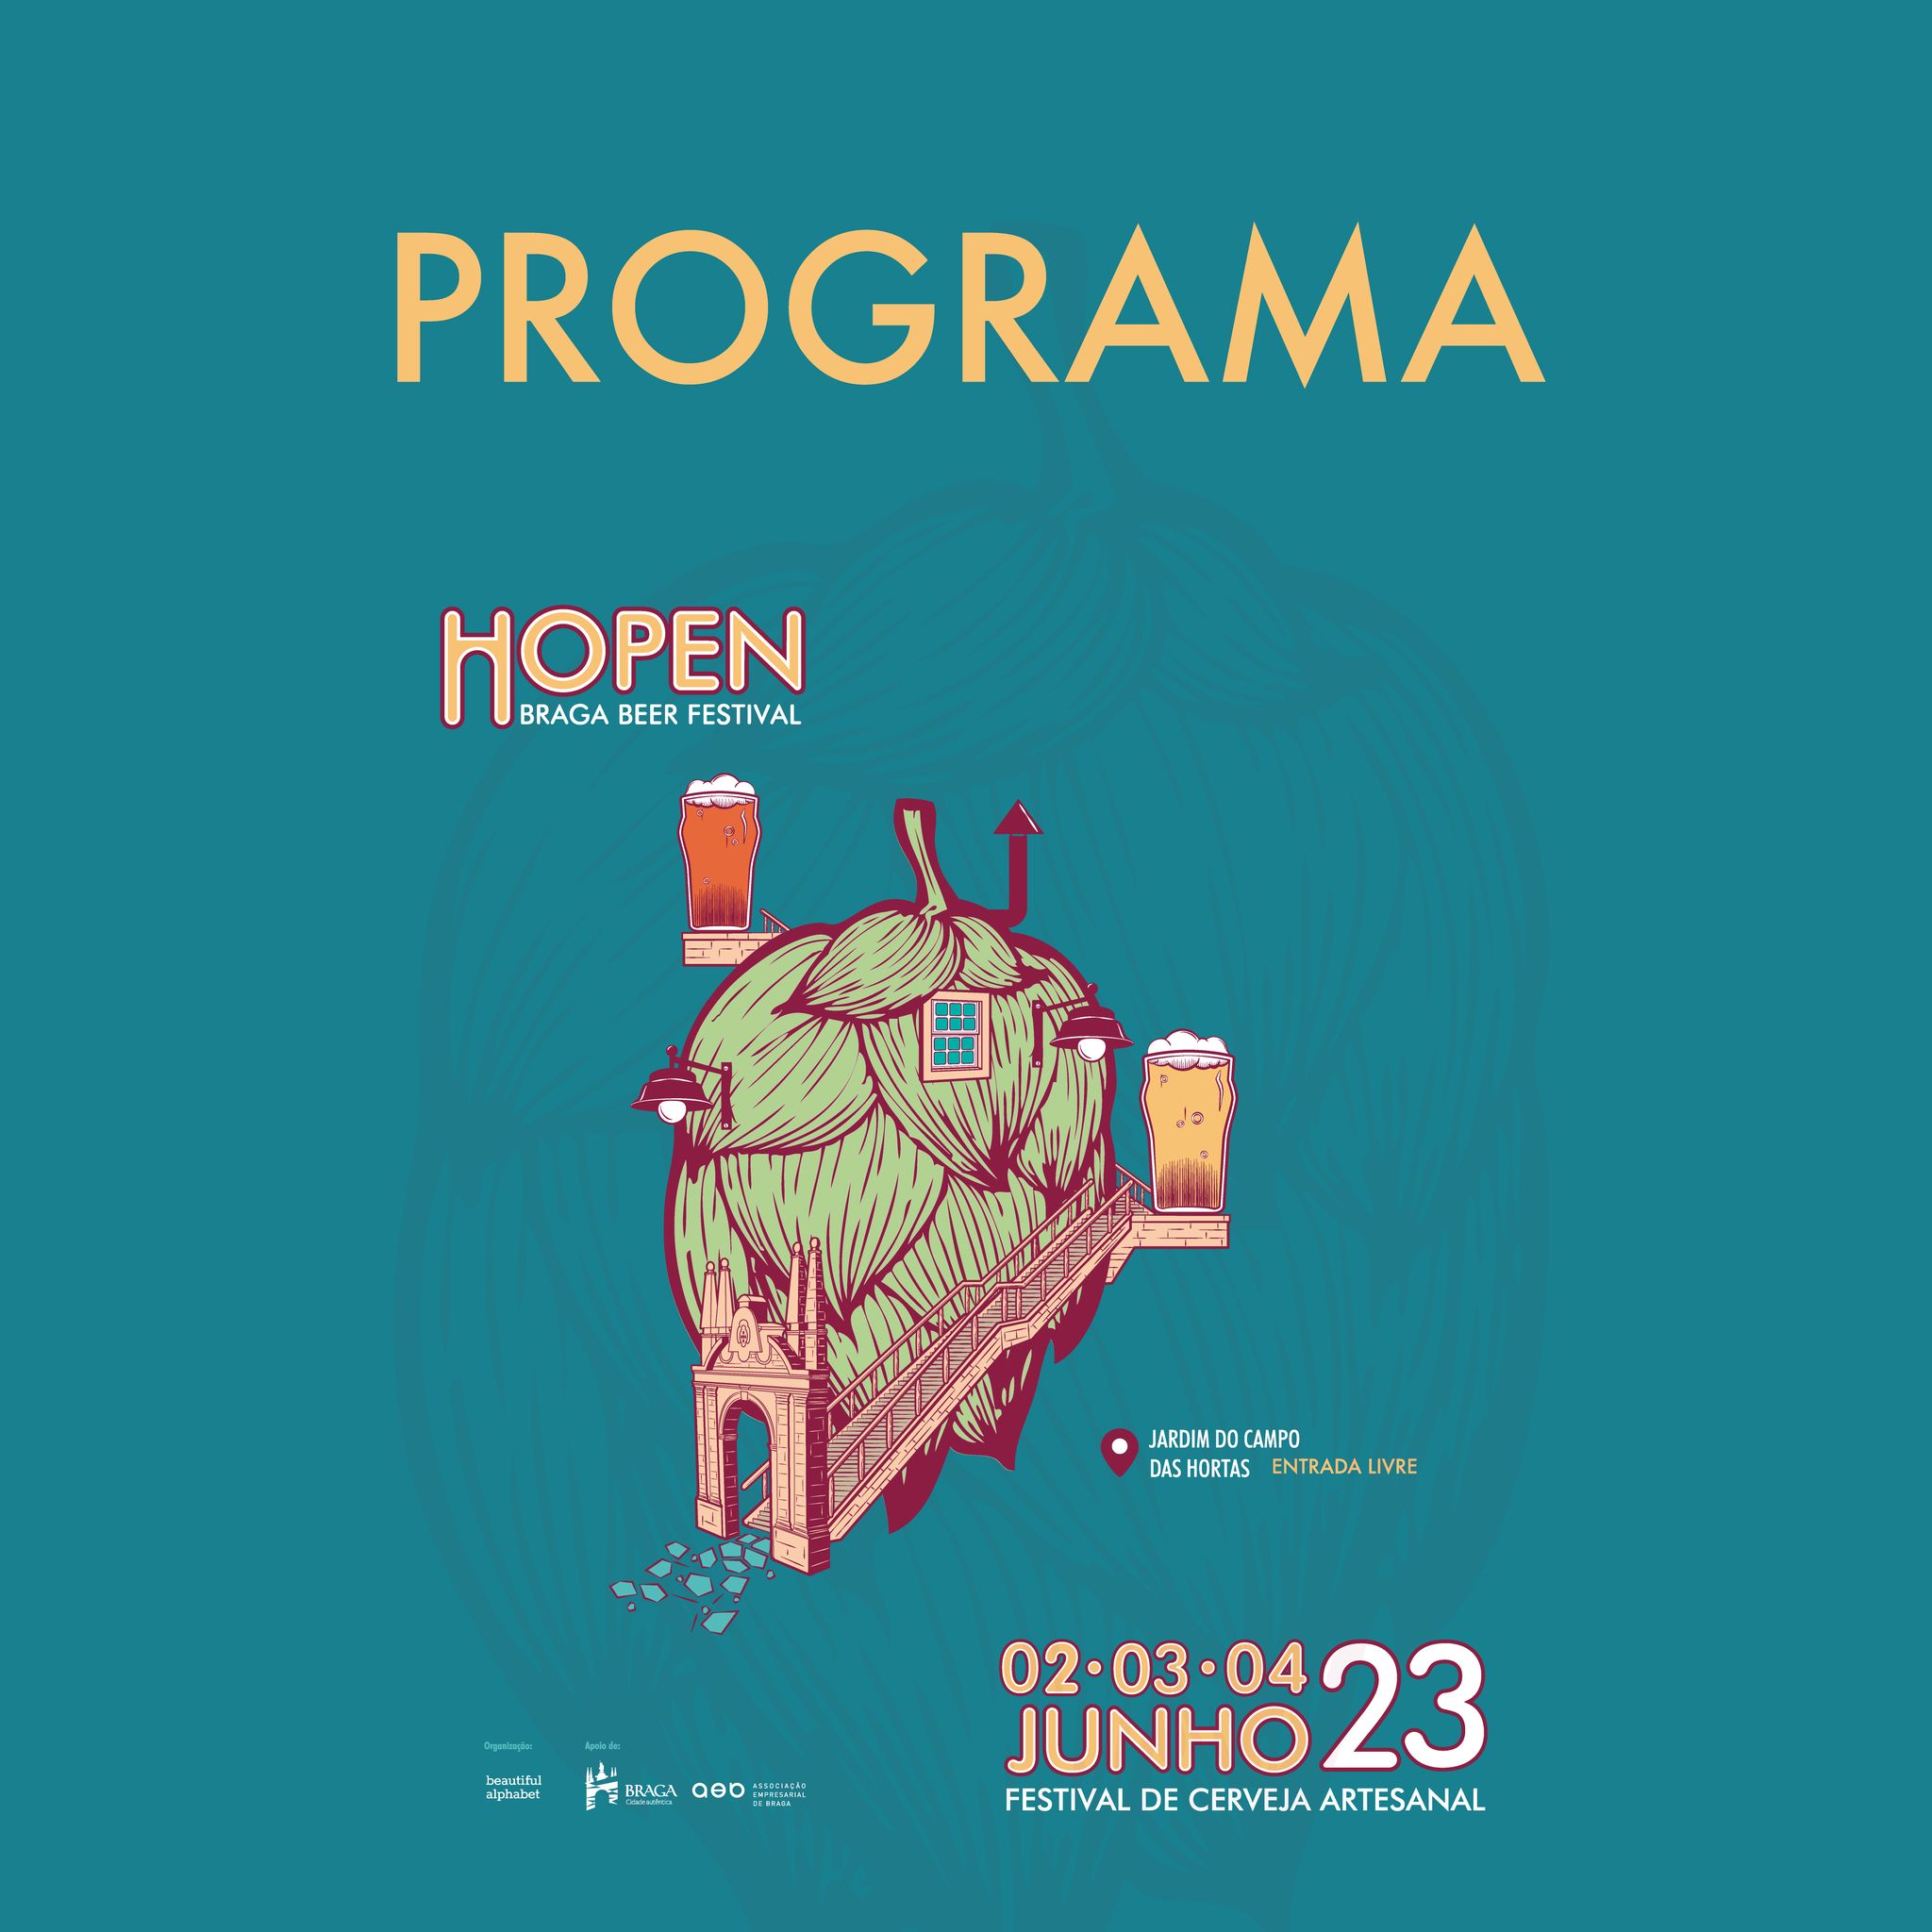 Hopen - Braga Beer Festival